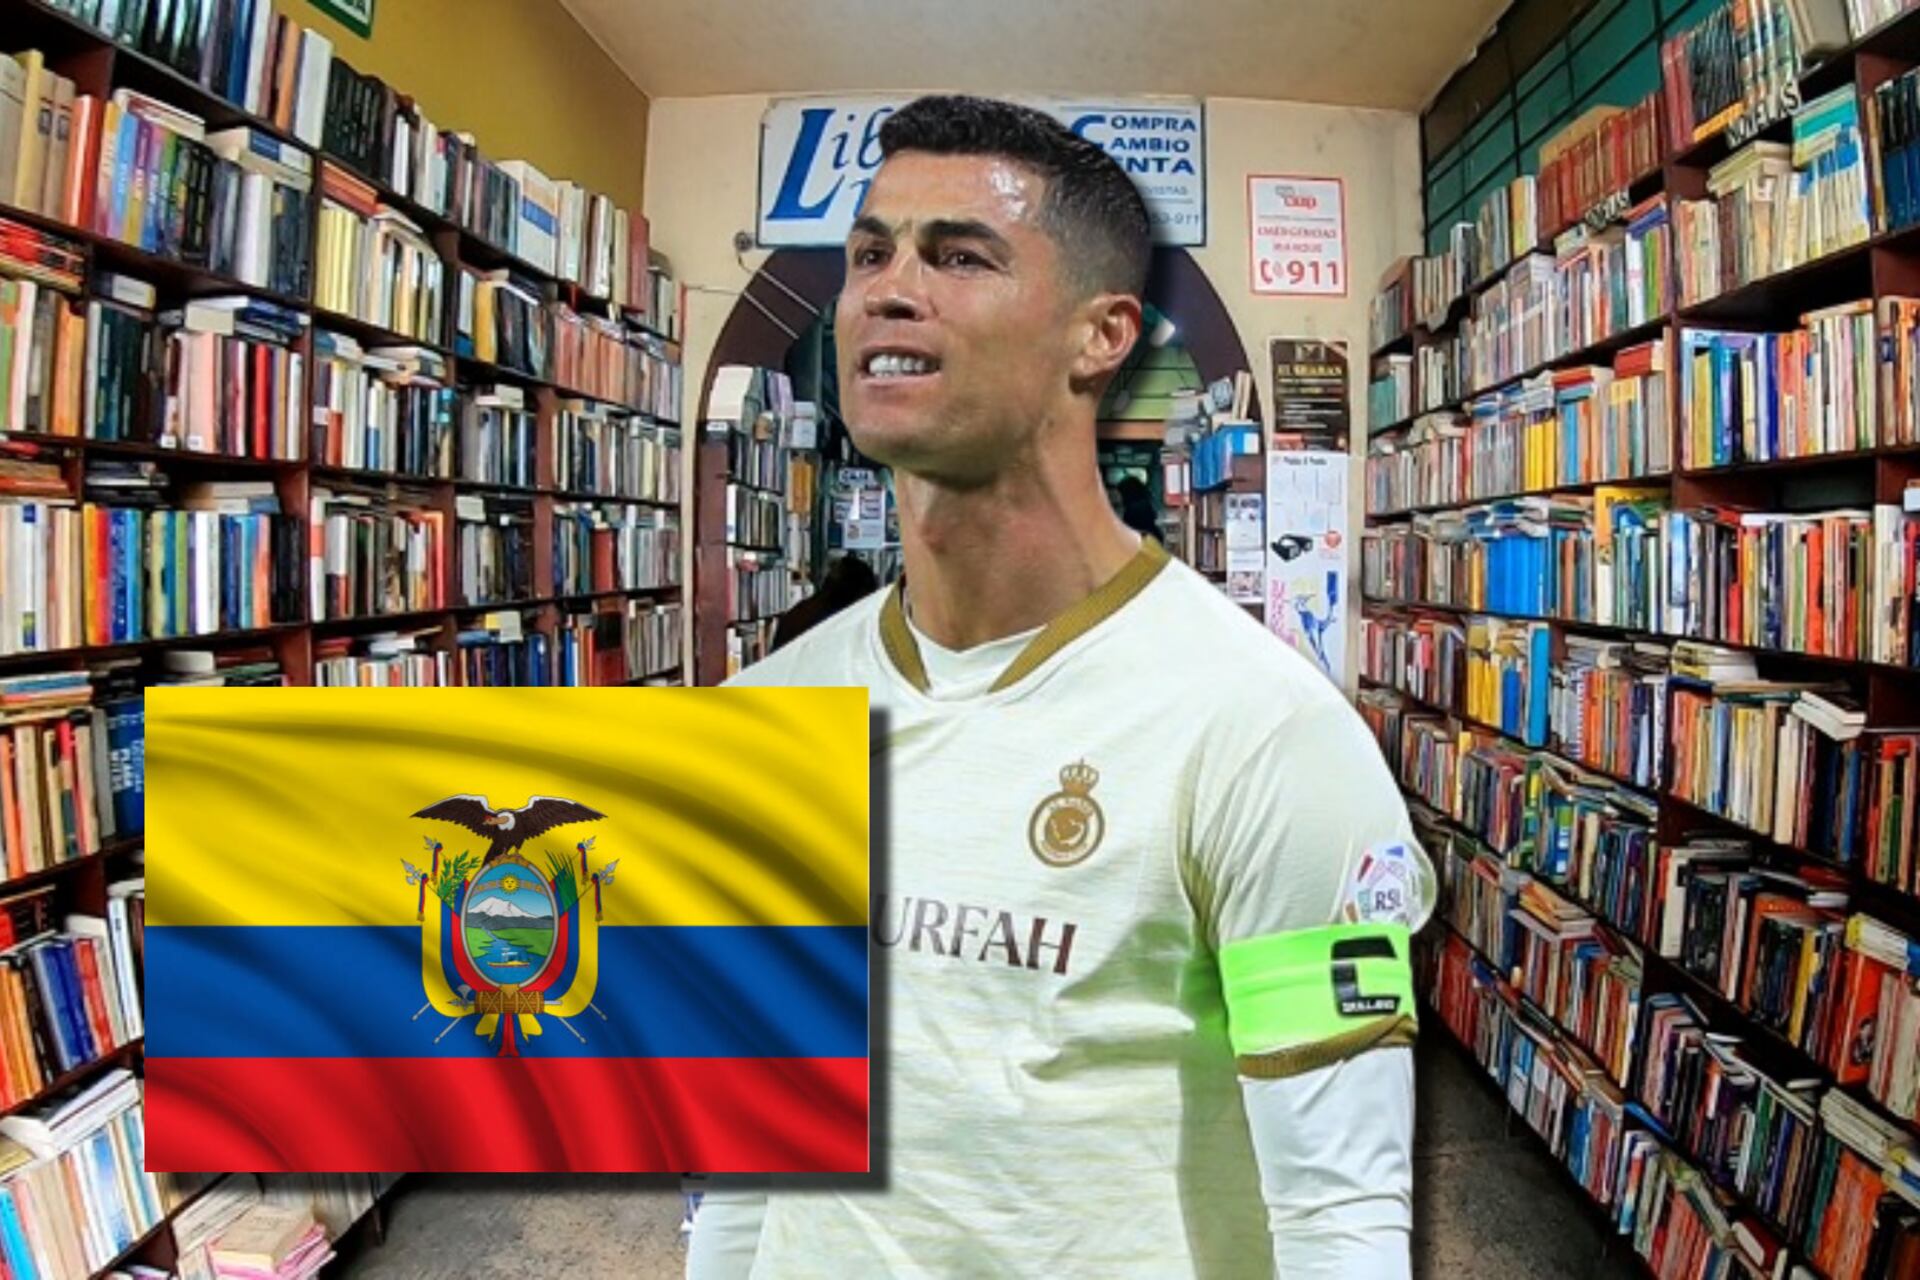 Mientras CR7 compró libros, el ecuatoriano que gastó su 1er sueldo en un carro